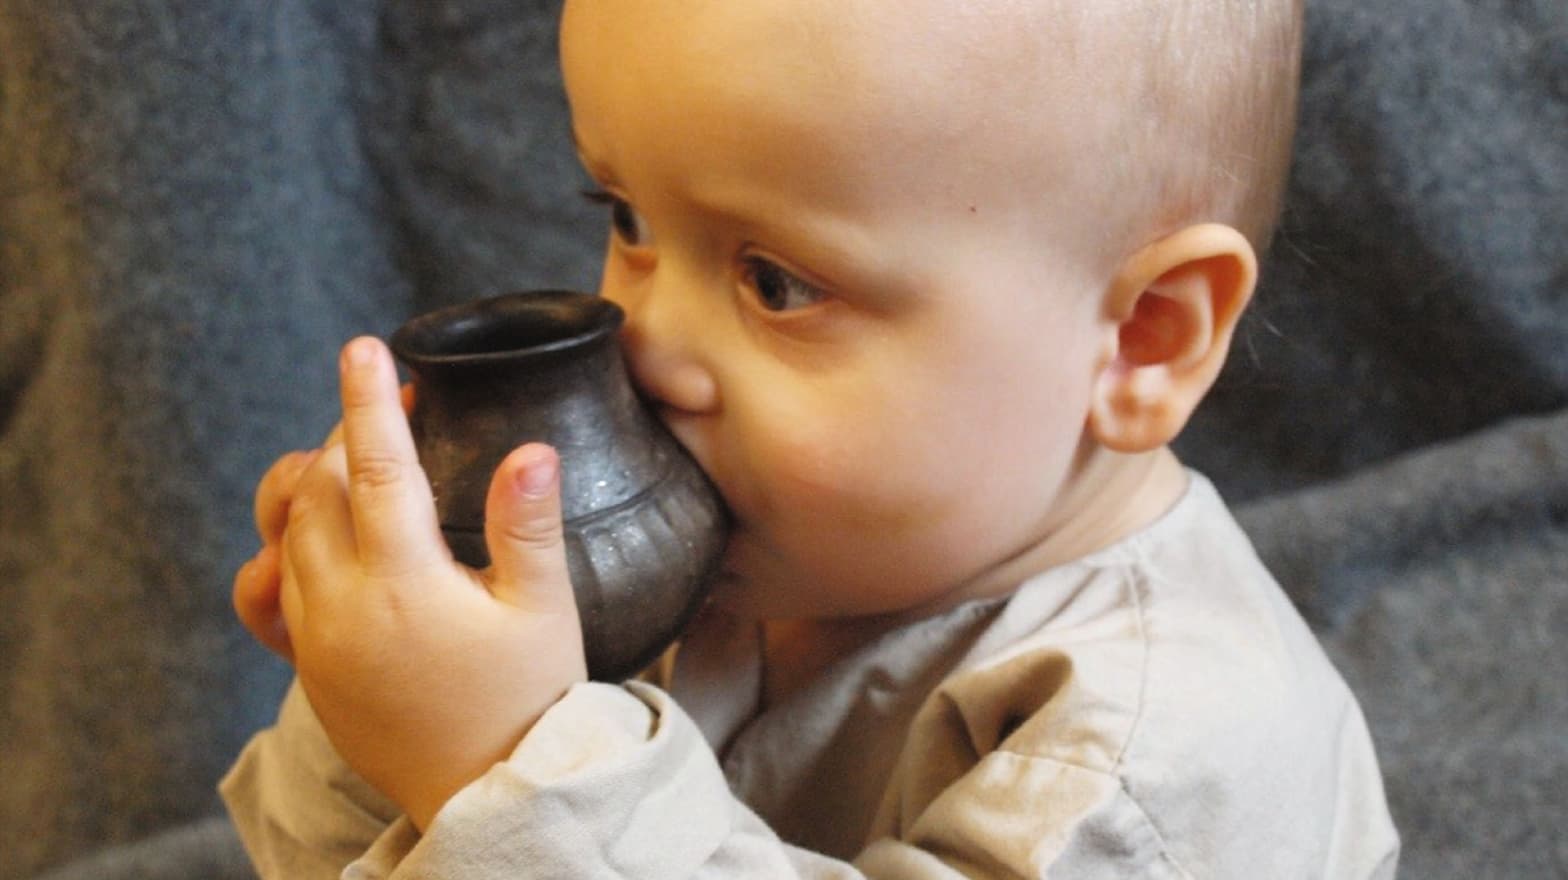 Bebê toma leite em um vaso reconstruído similares aos analisados pelo novo estudo